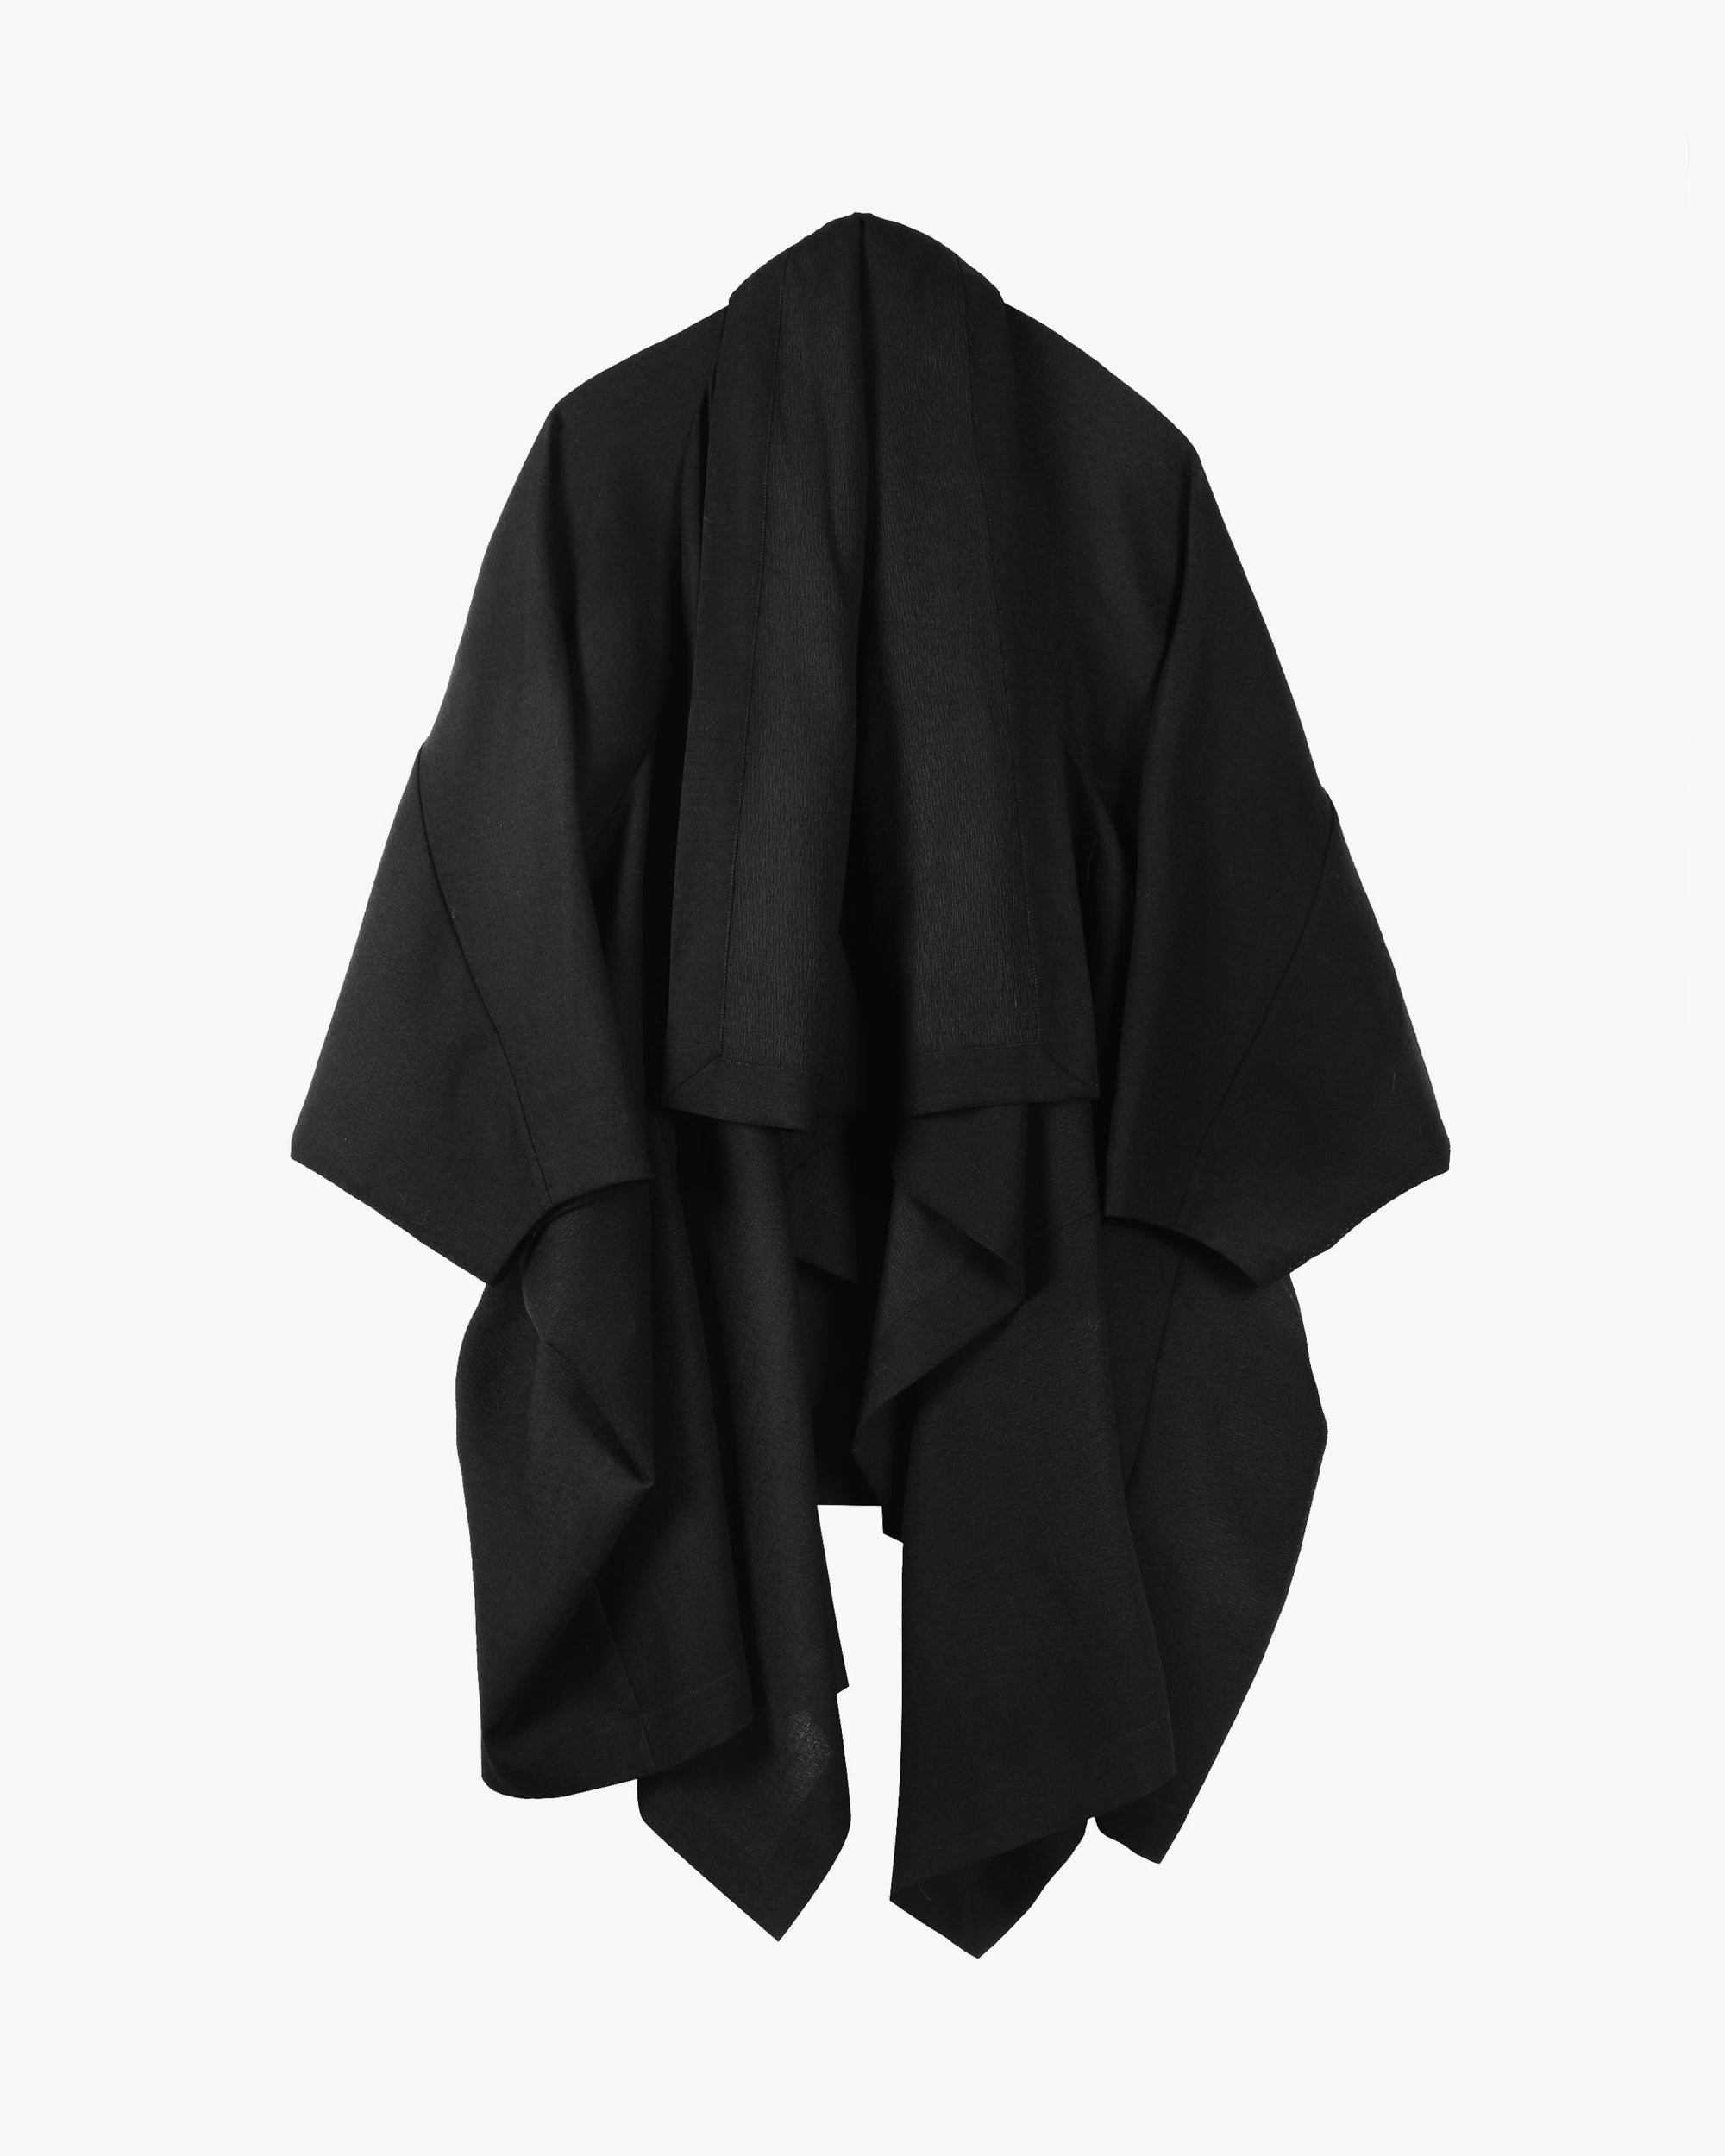 ROSEN O-Ren Coat in Silk-Wool